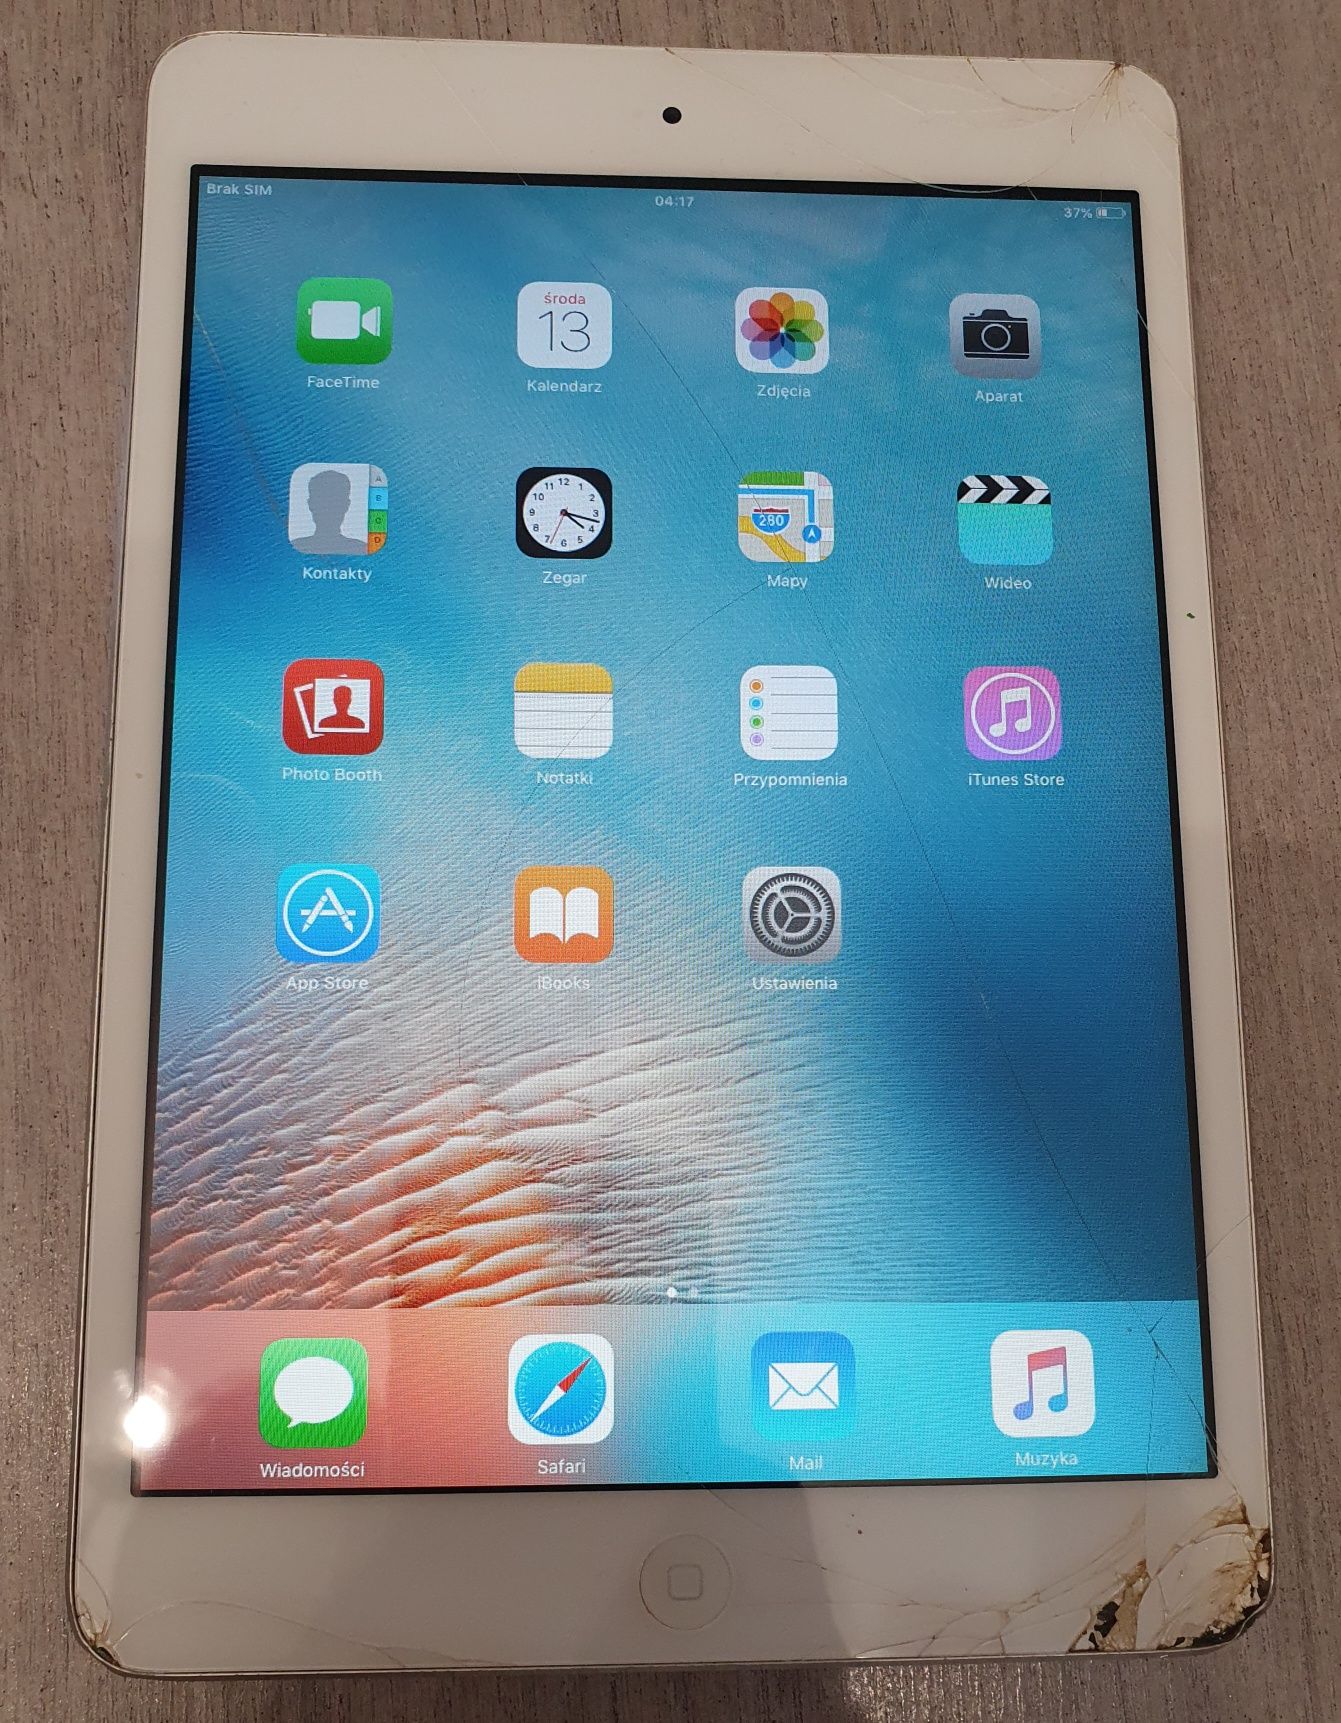 Apple iPad mini WiFi+Cellular 16GB Biało-srebrny MD543

Apple iPad min